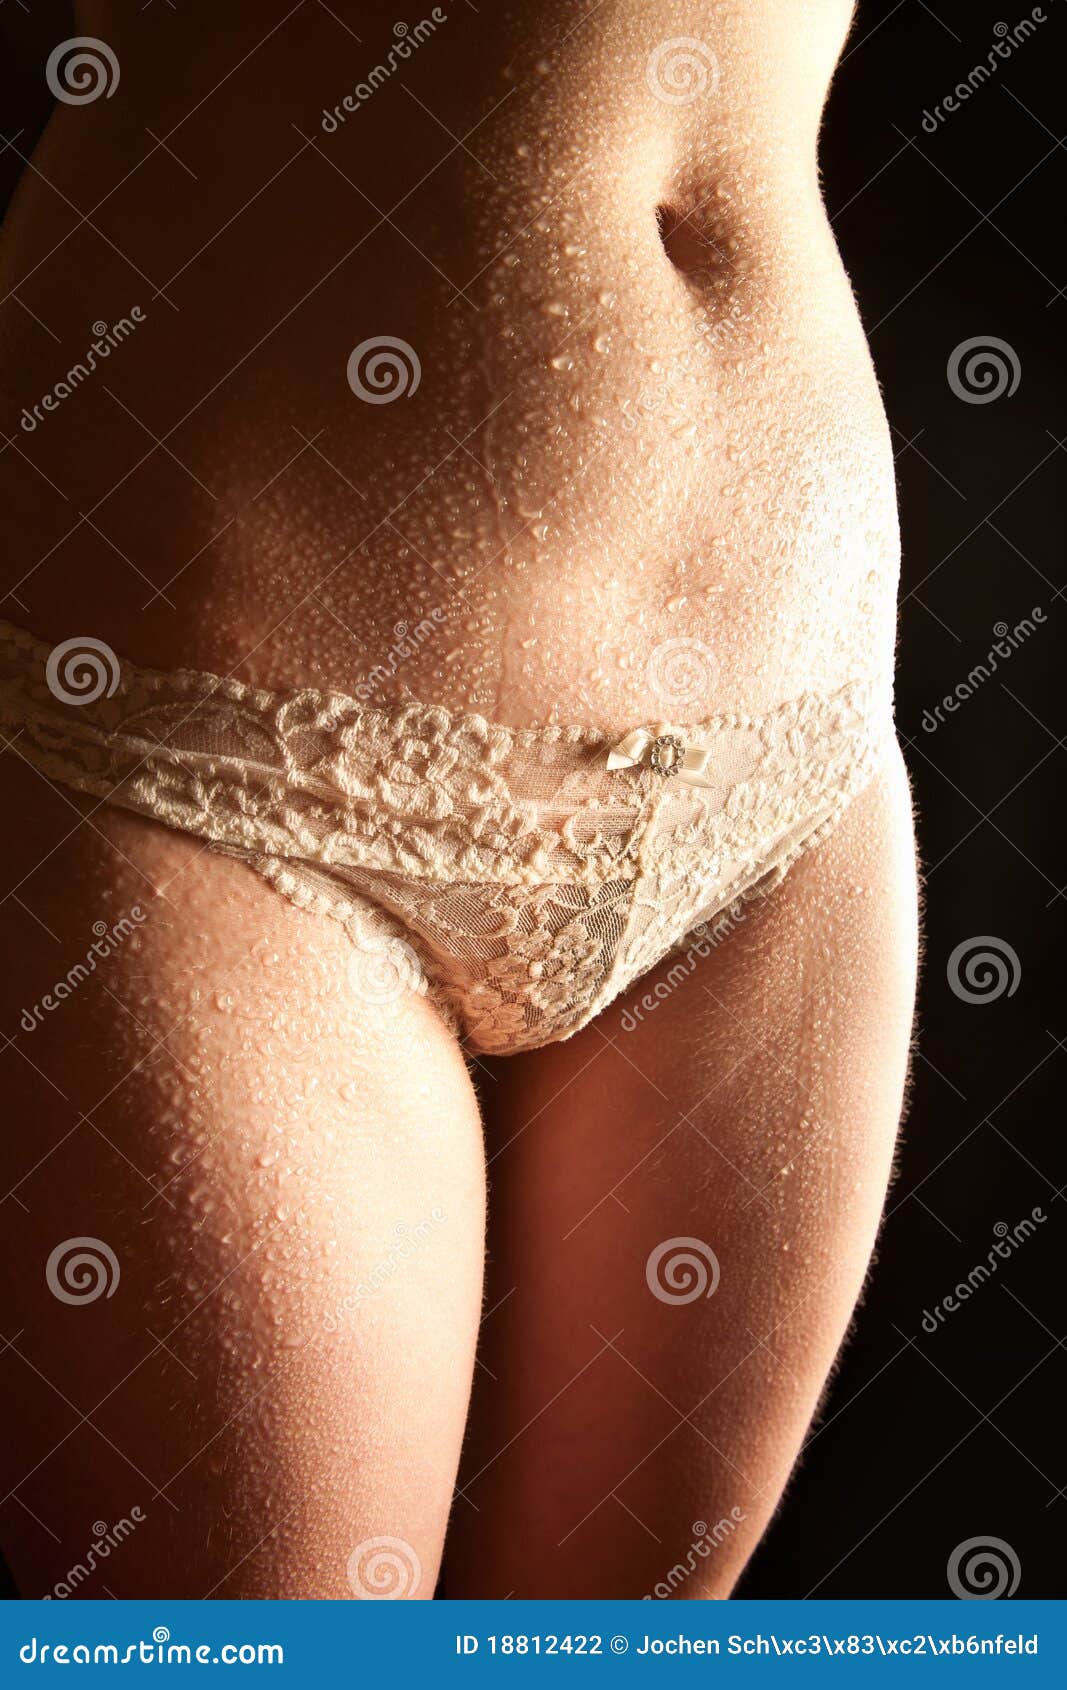 daphne venable add women in wet panties photo